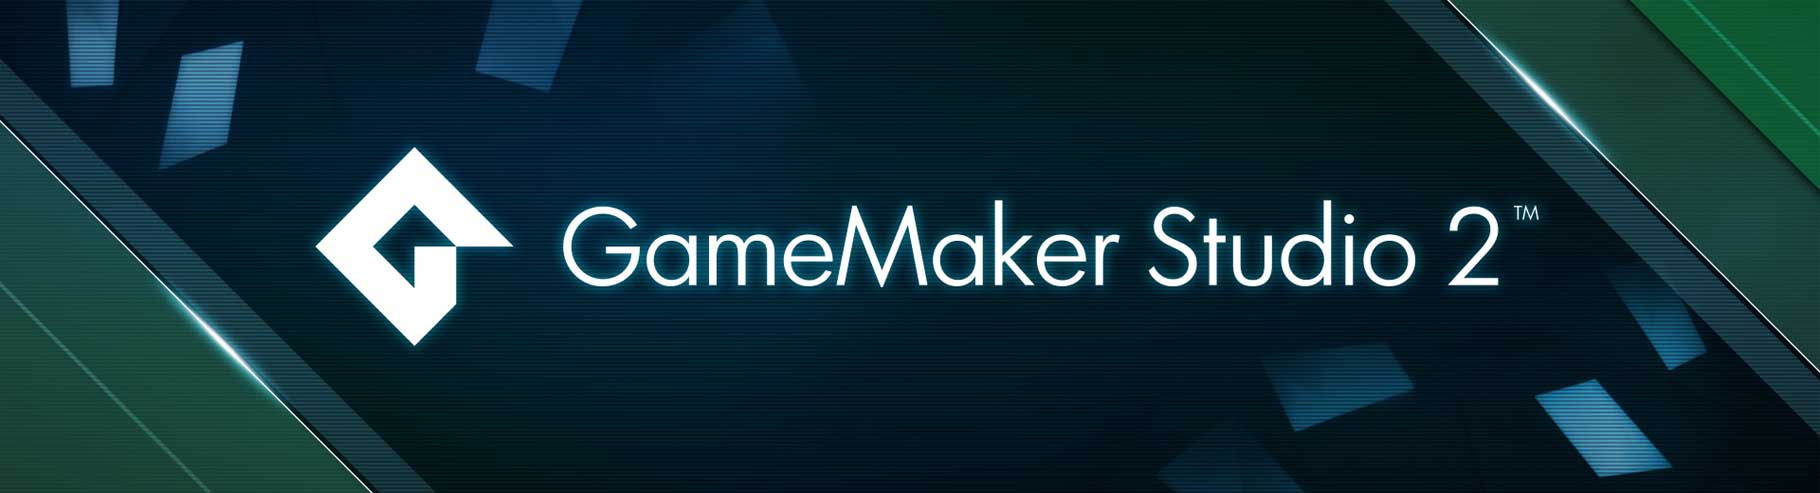 GameMaker Studio 2 Key Features